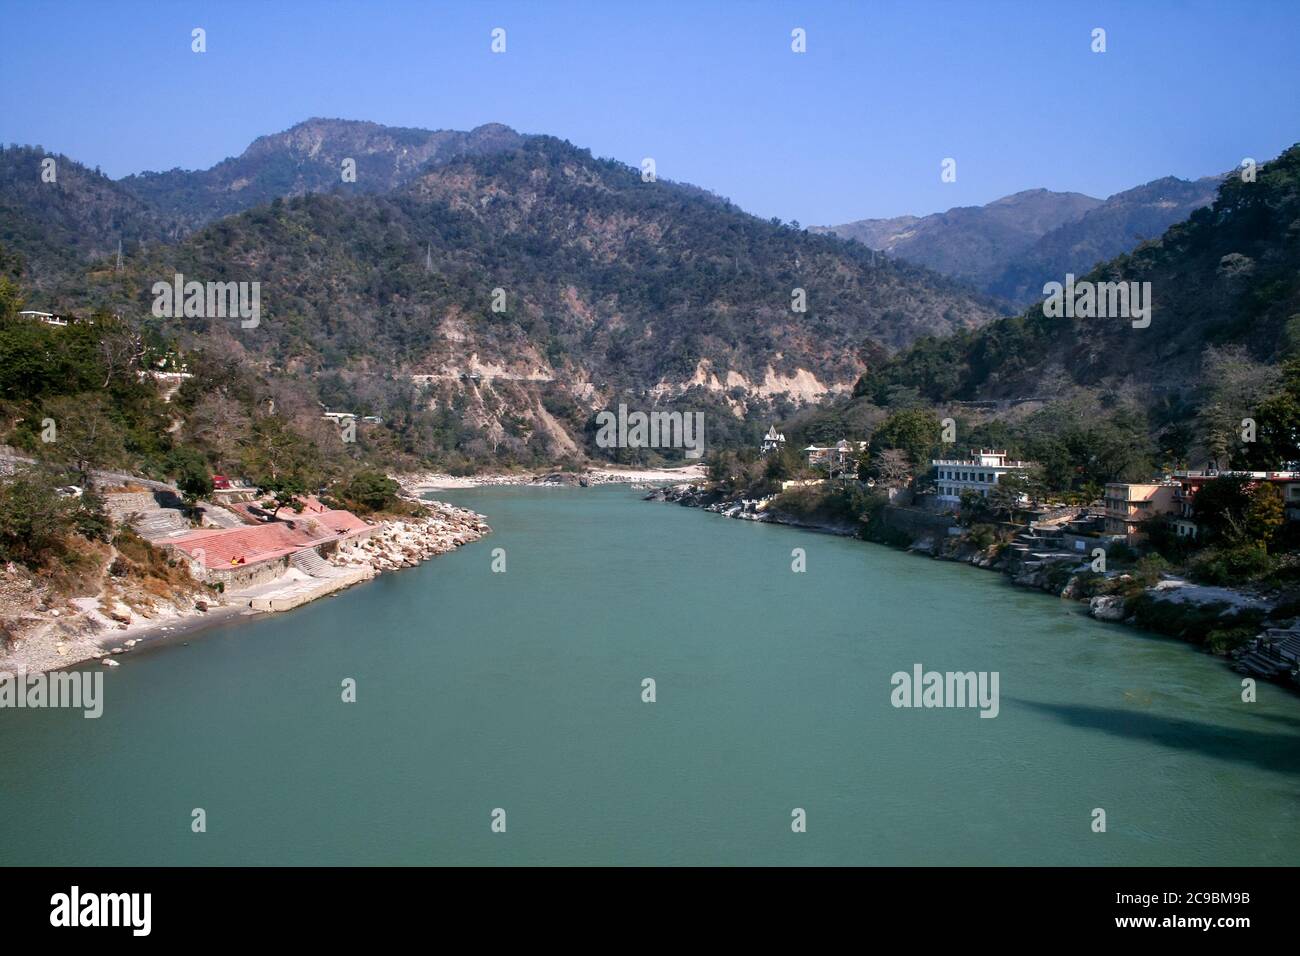 Chaîne de montagnes de l'Himalaya avec le Gange qui coule à travers elle. Rishikesh et Haridwar sont des destinations touristiques populaires appelées villes à deux patrimoines Banque D'Images